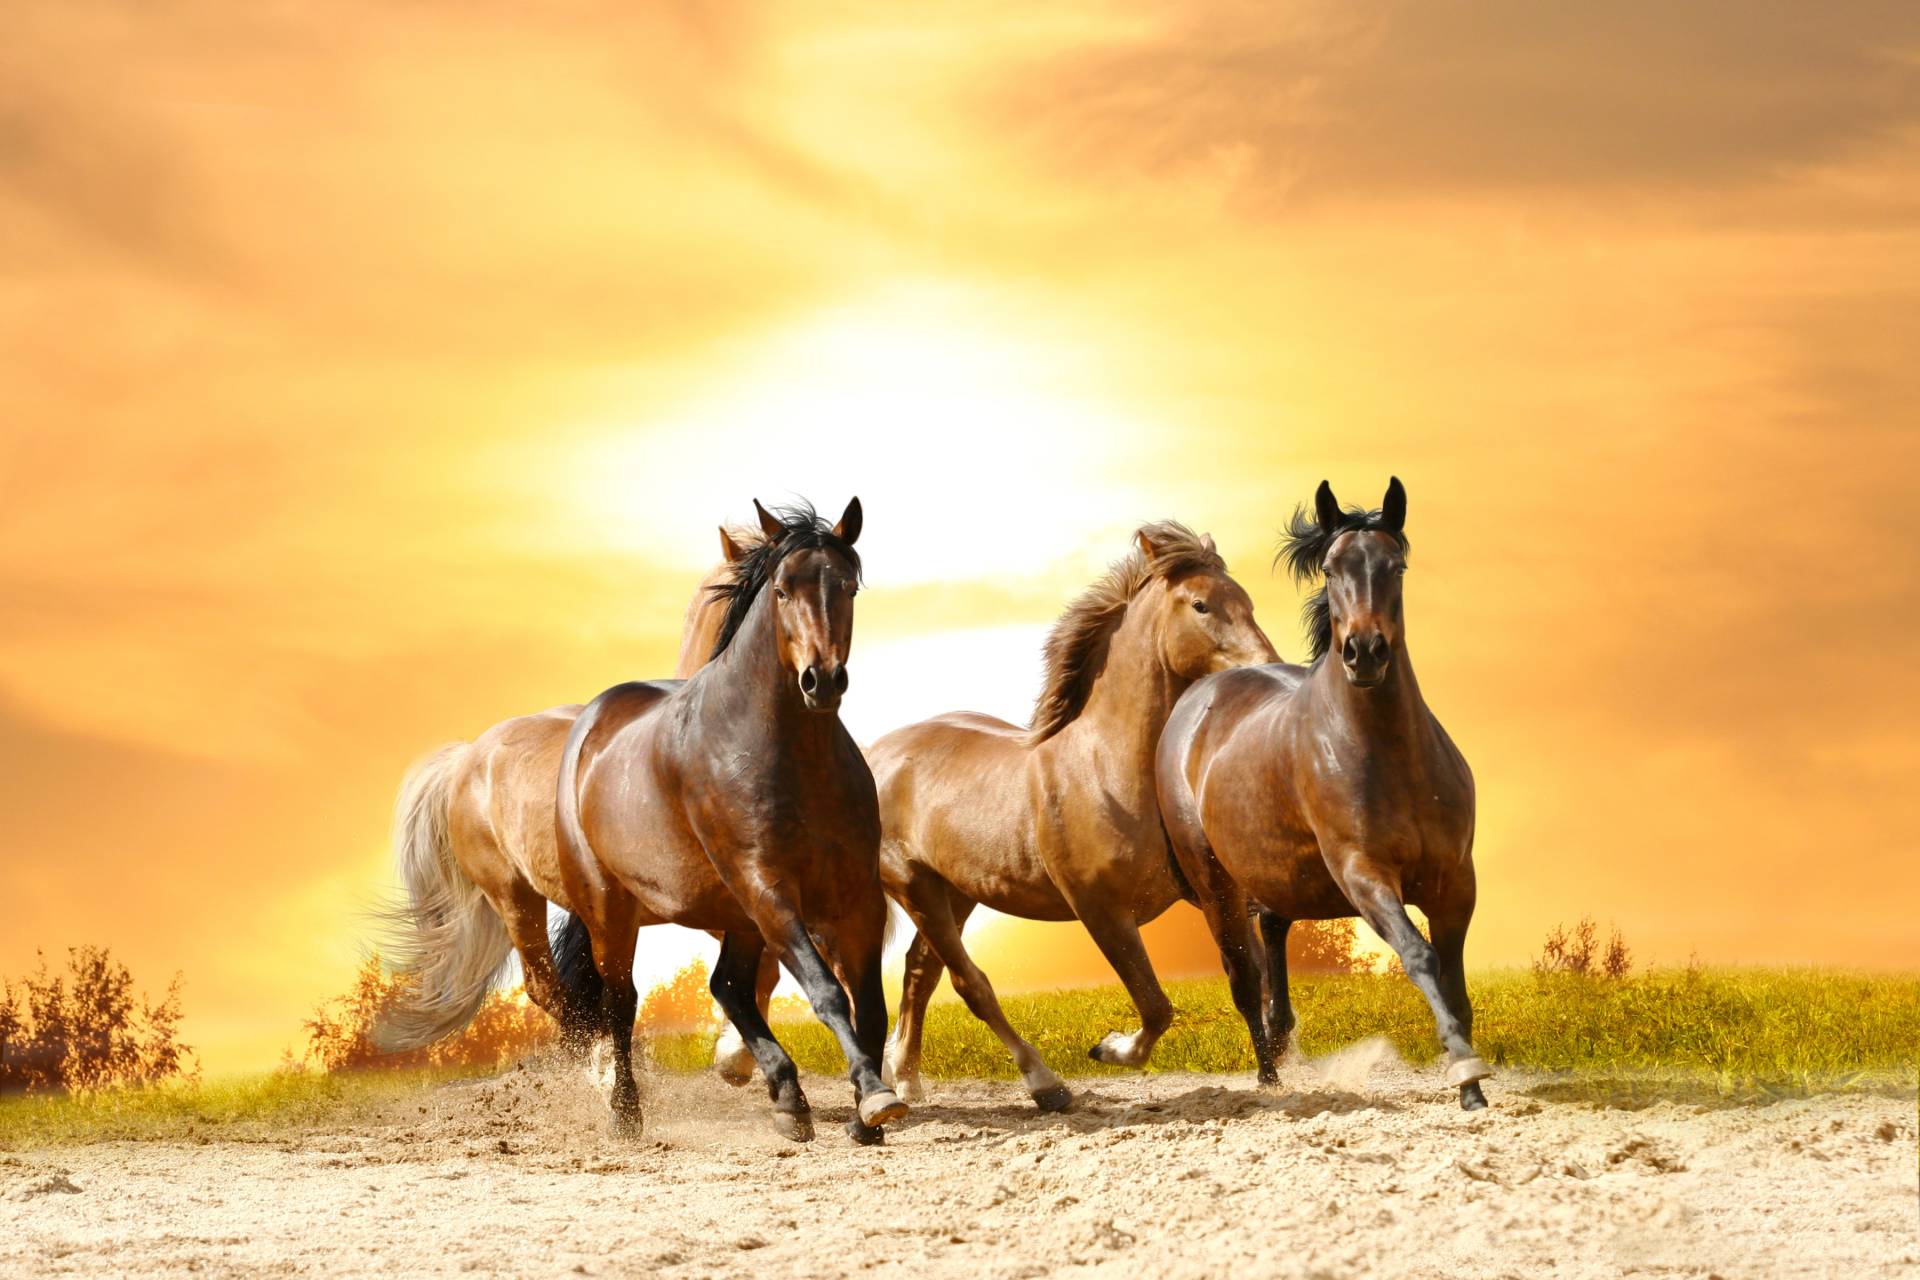 Papermoon Fototapete »Horses Run in Sunset« von Papermoon